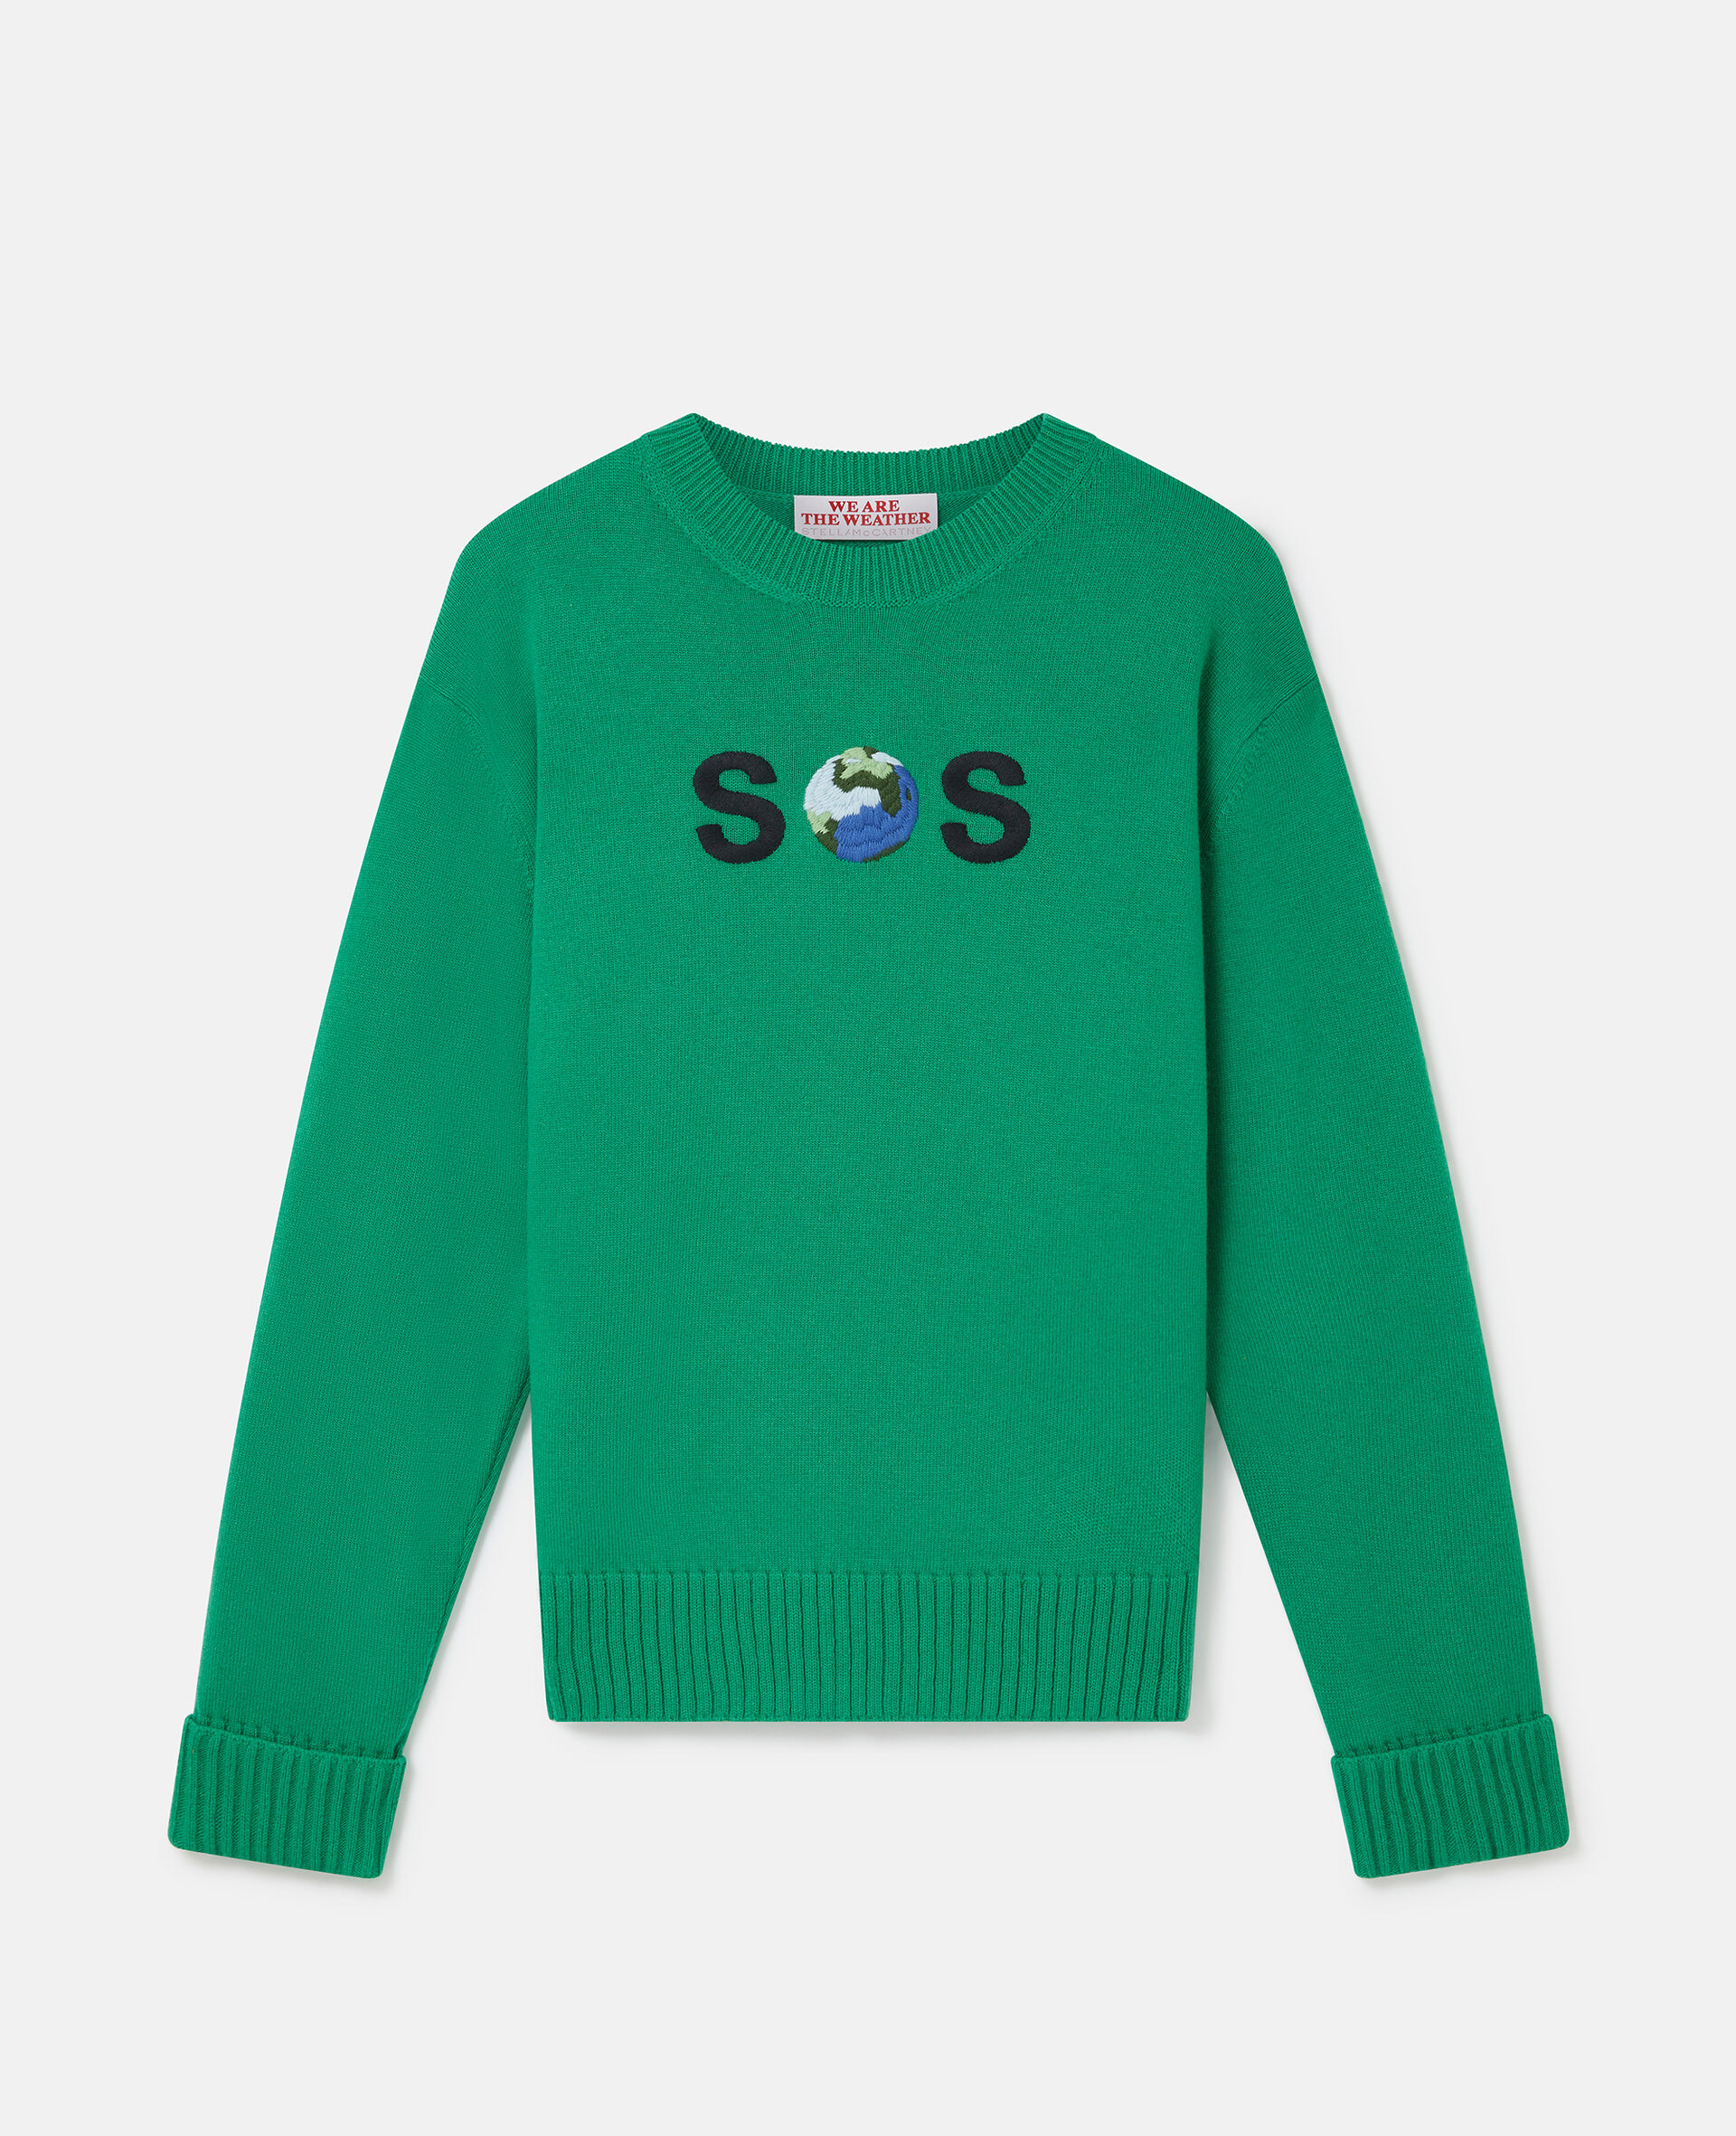 SOS Embroidered Knit Jumper-绿色-large image number 0